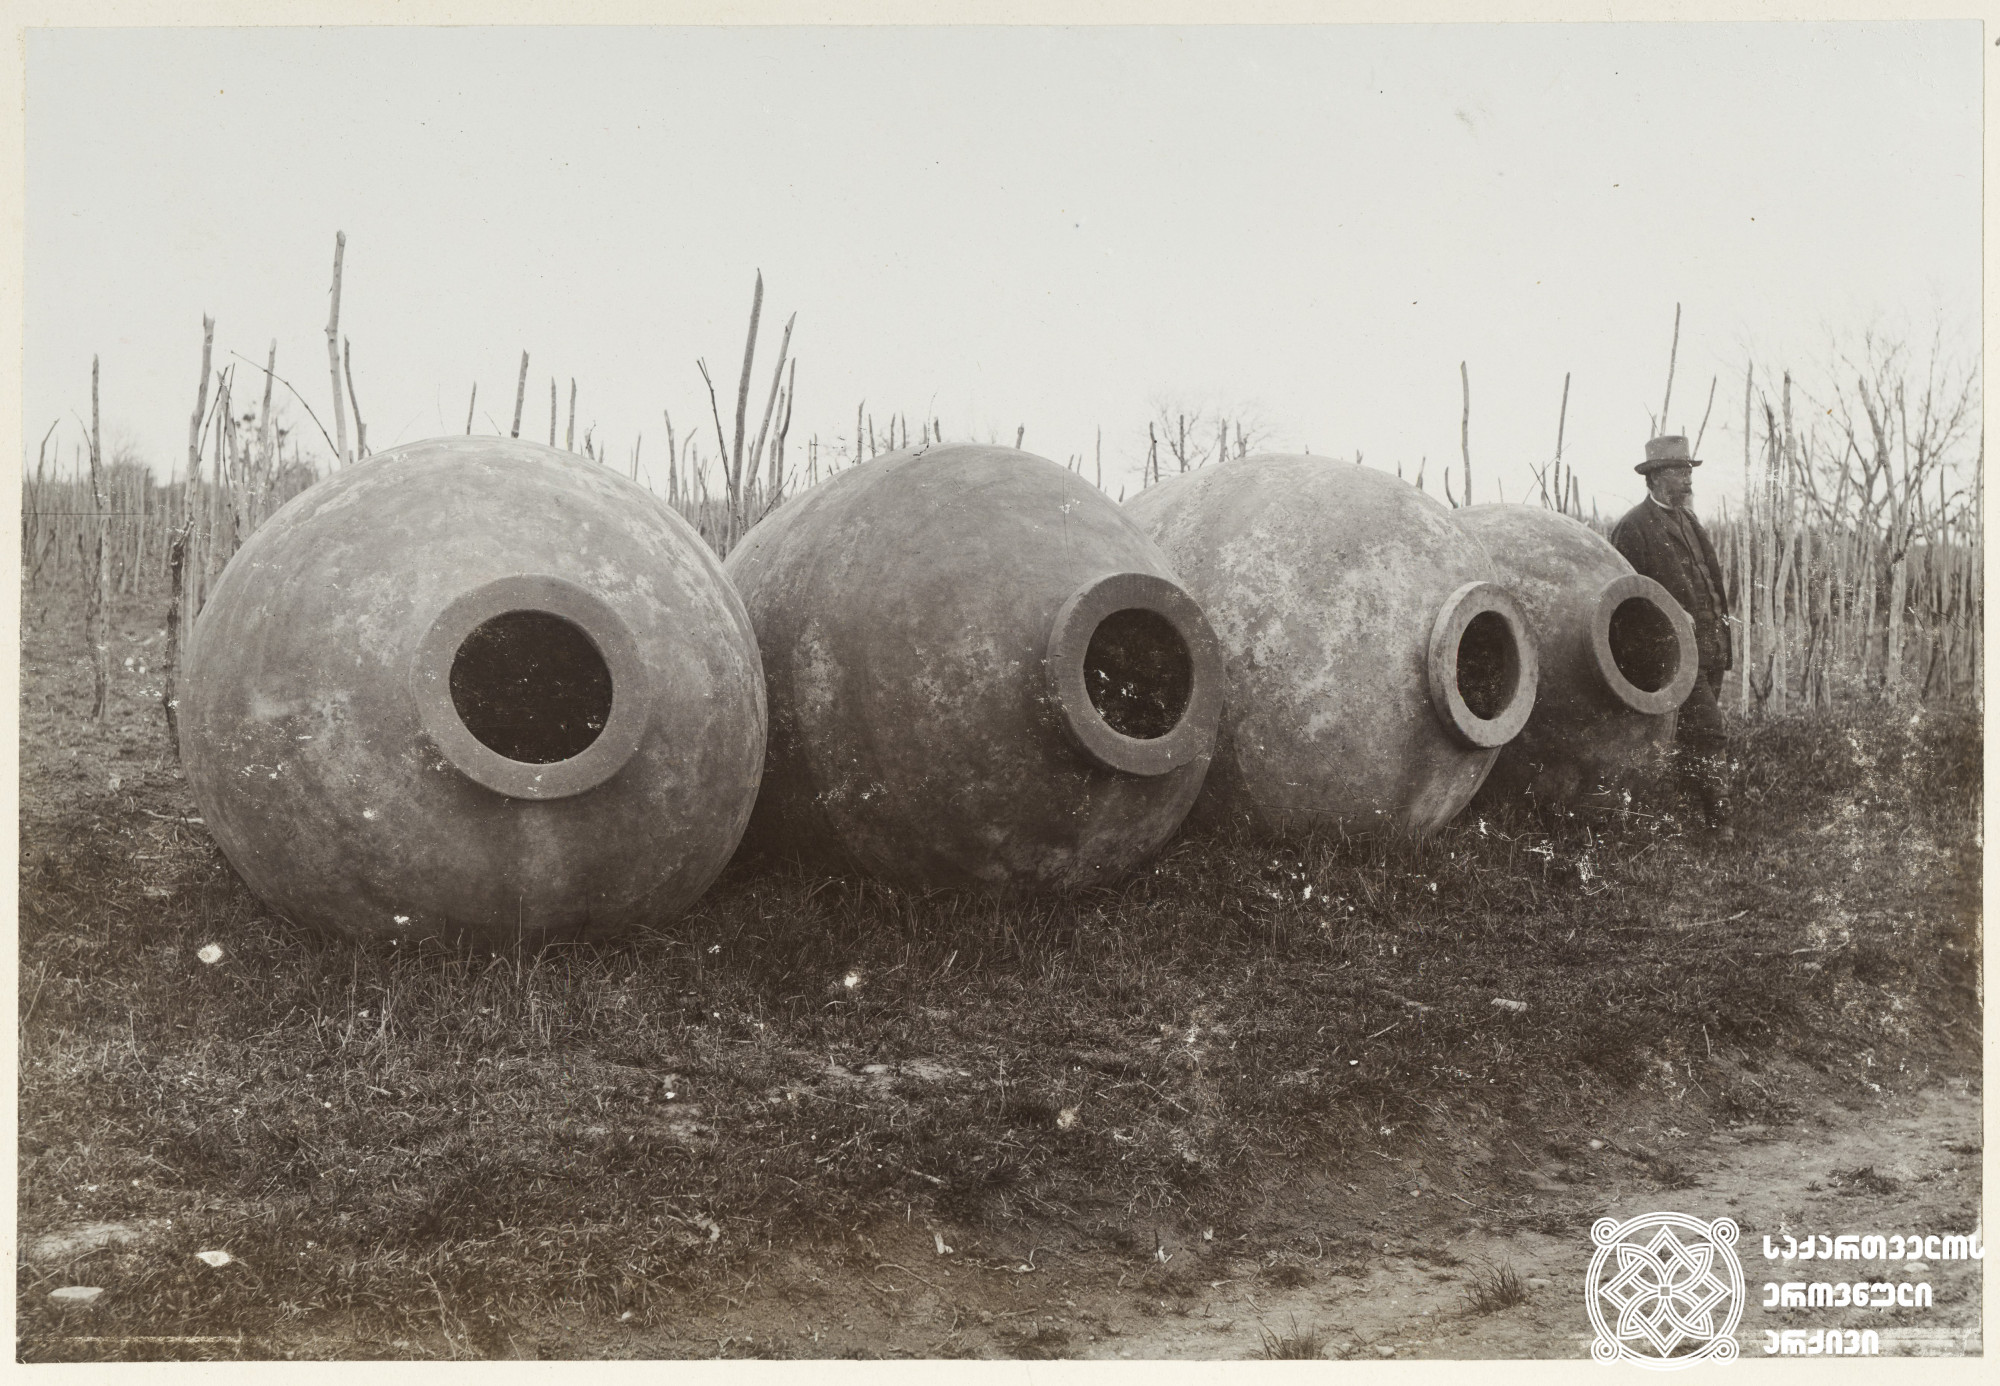 ქვევრები<br>
კახეთი, 1900-1905 წლები <br>
ფოტო: კონსტანტინე ზანისი <br>
Pitchers<br>
Kakheti, 1900-1905 <br>
Photo by Konstantin Zanis